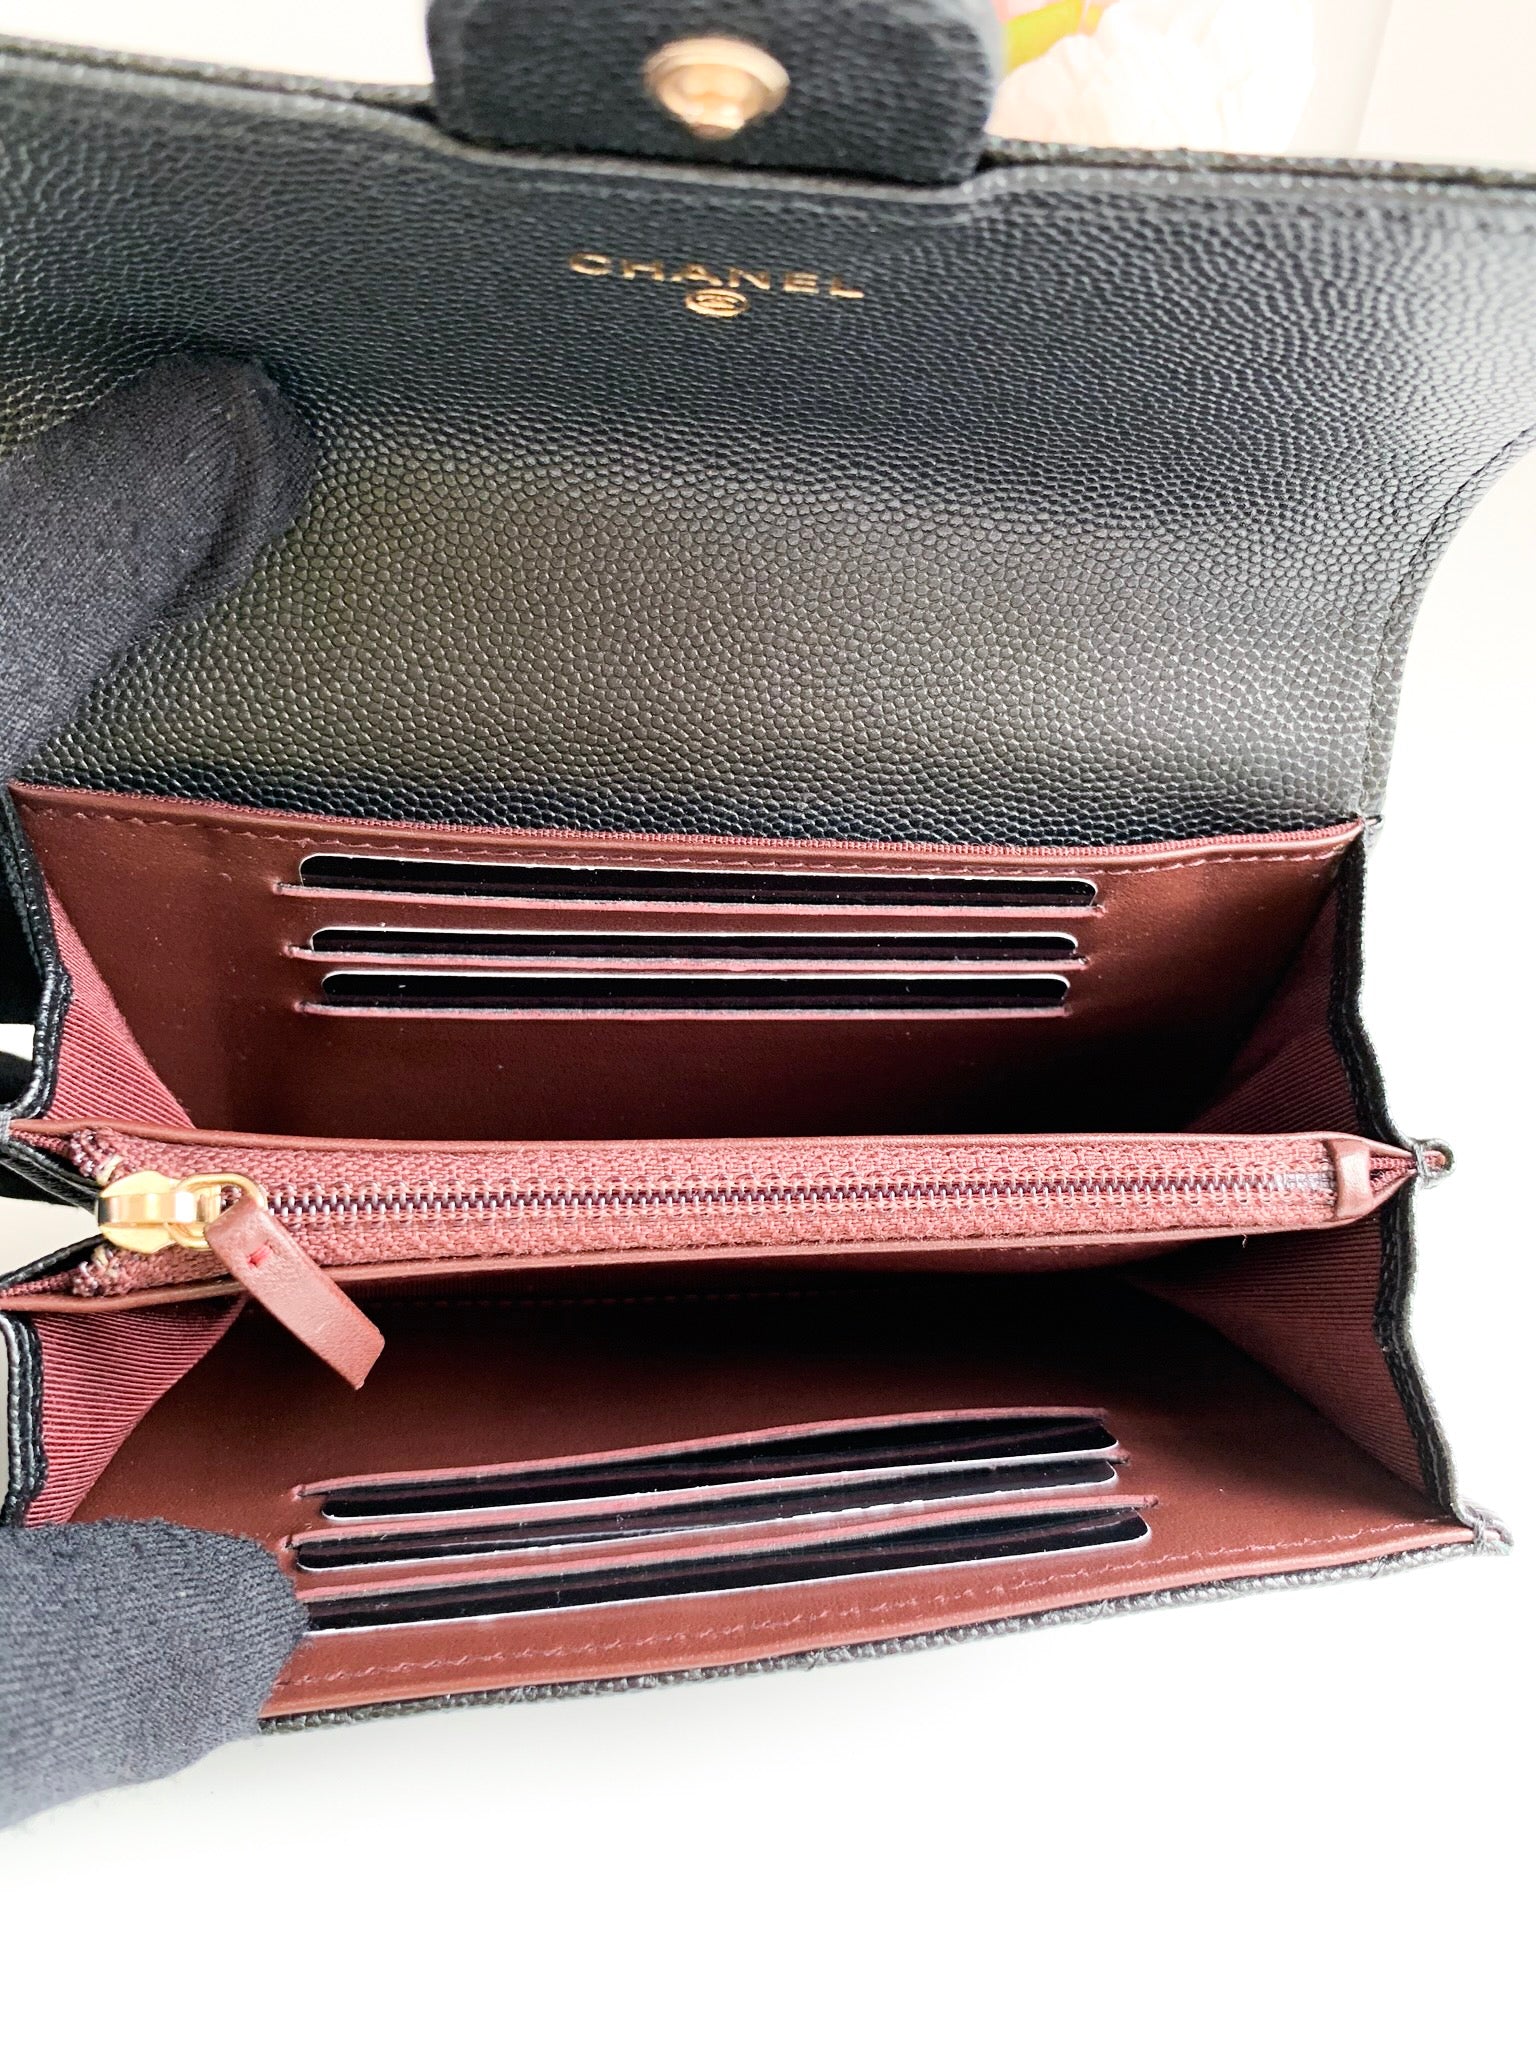 flap chanel wallet